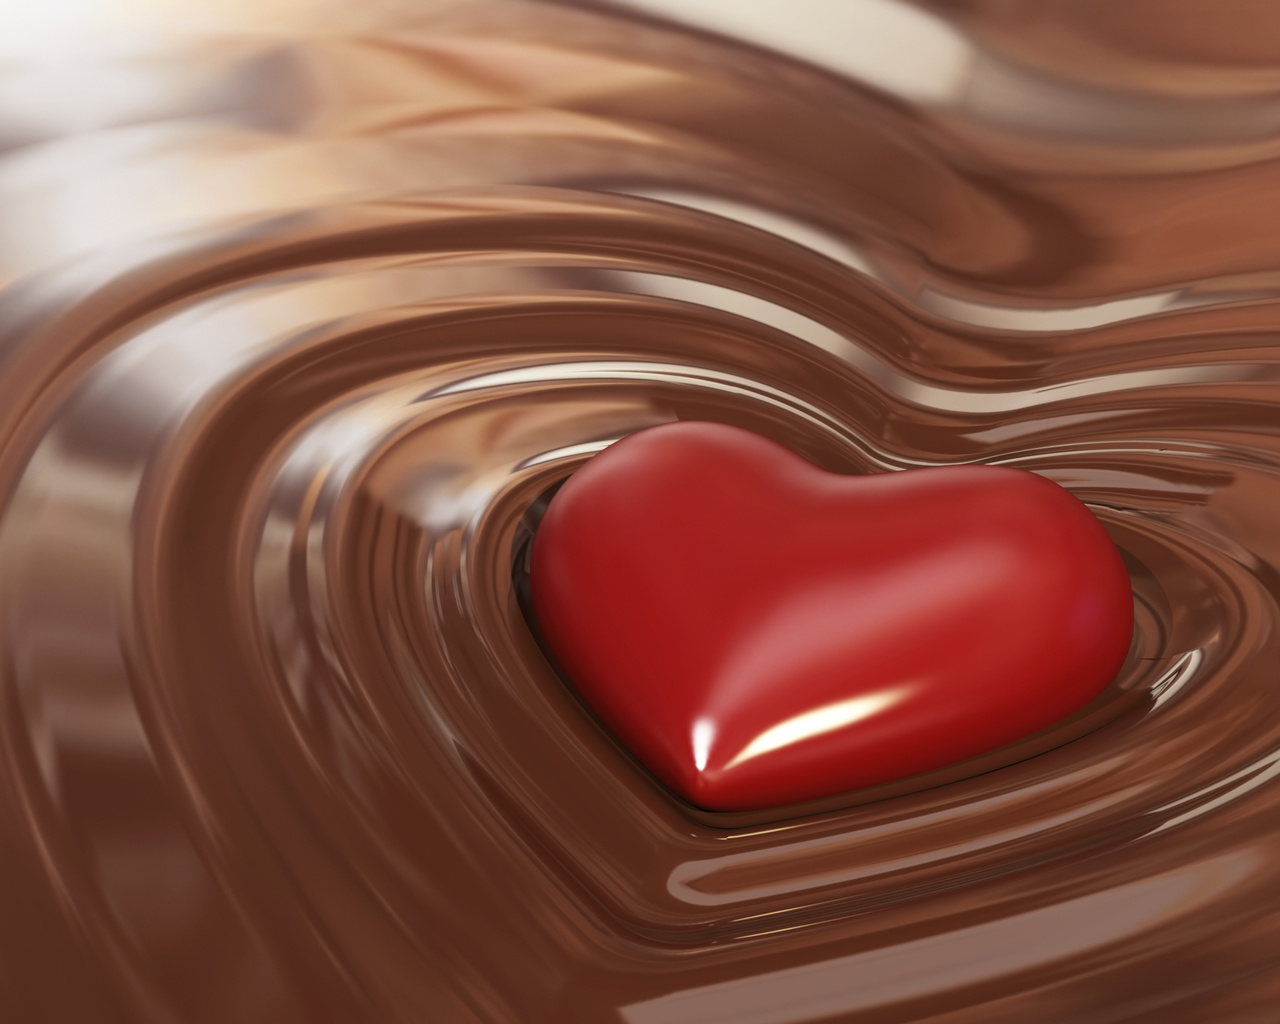 жидкий шоколад, текстура, фото, фон, скачать, chocolate, texture